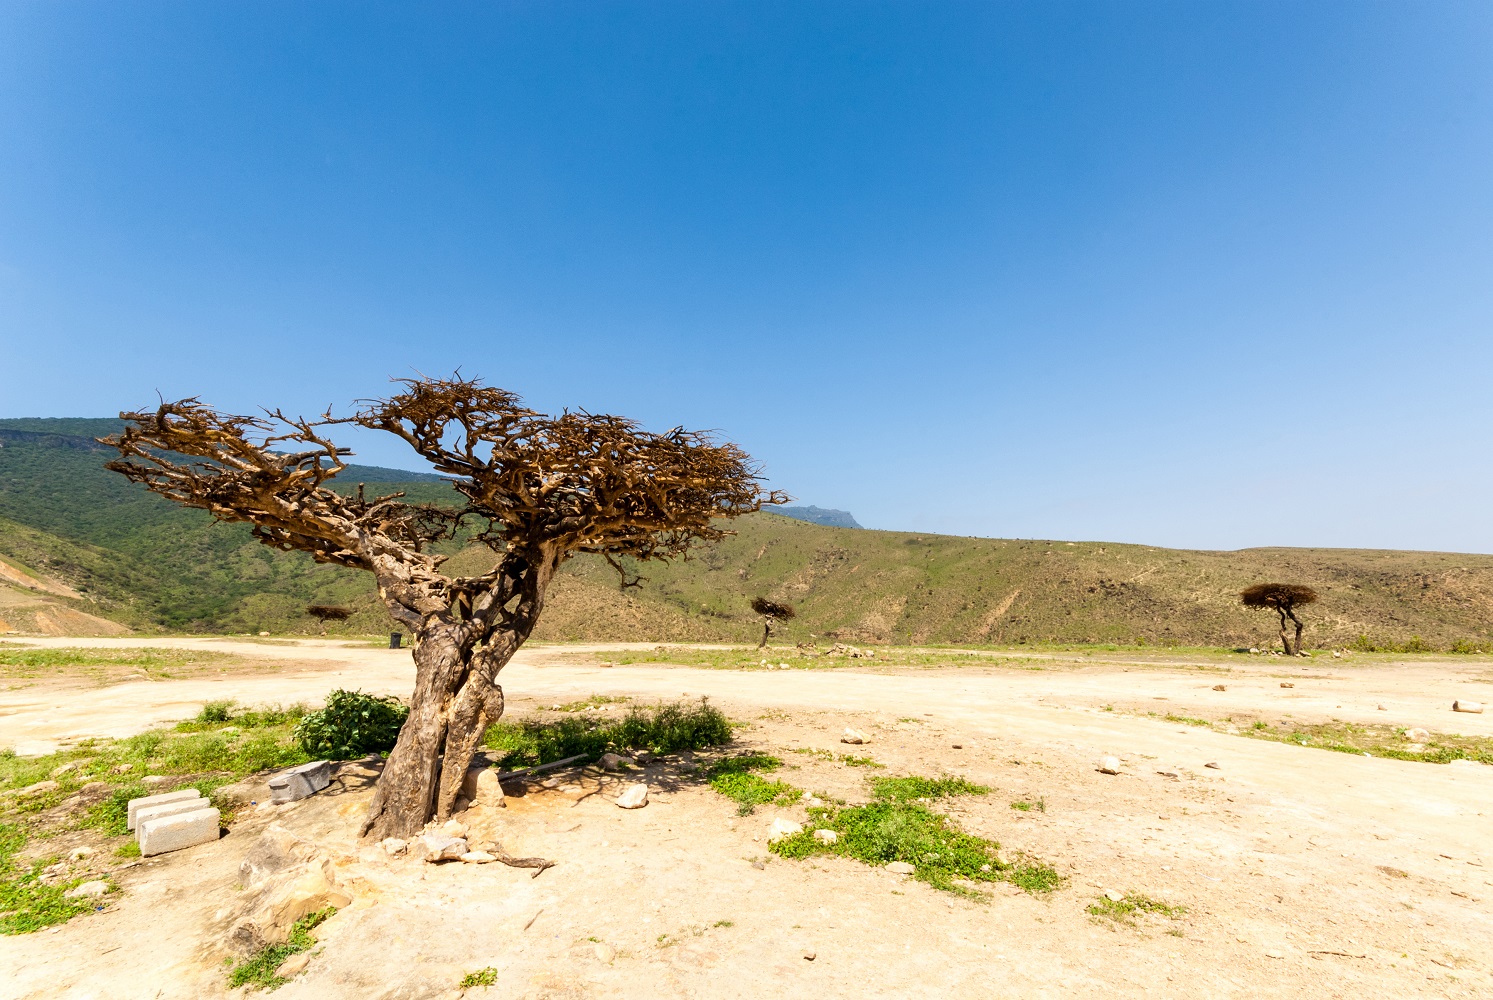 Das Mein Schiff Auflug: Weihrauchbäume in der Region Dhofar nahe Salalah im OmanWadi Darbat vom Mein Schiff Reiseziel Salalah - hier leben wilde Kamele